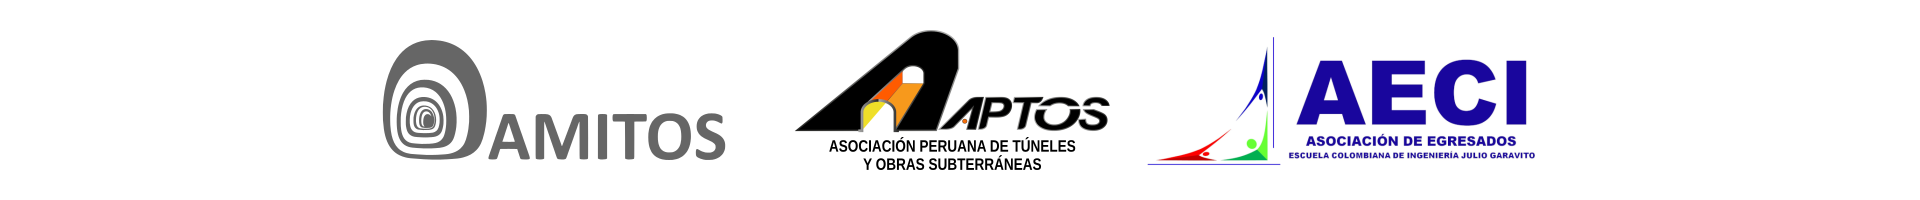 Amitos México, Aptos Perú, AECI (Asociación de Egresados de la Escuela Colombiana de Ingeniería Julio Garavito)